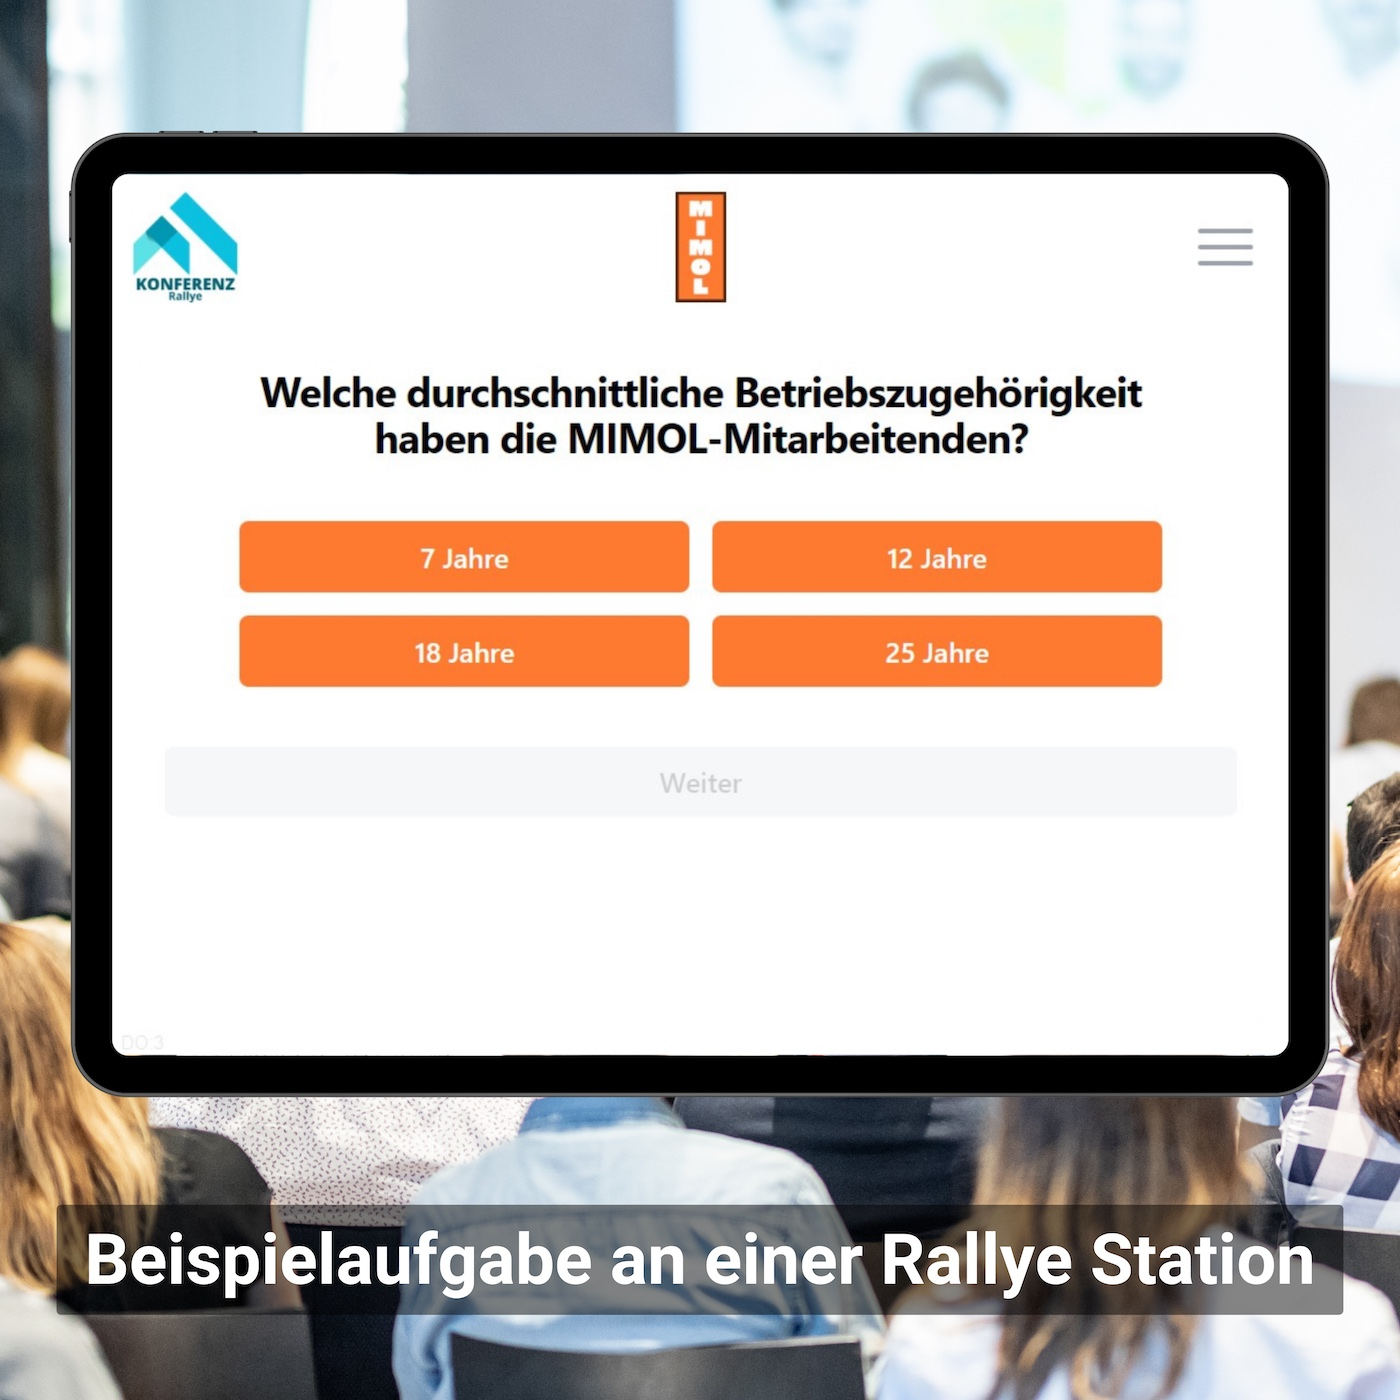 Anzeige einer Beispielaufgabe auf einem Tablet an einer Rallye-Station